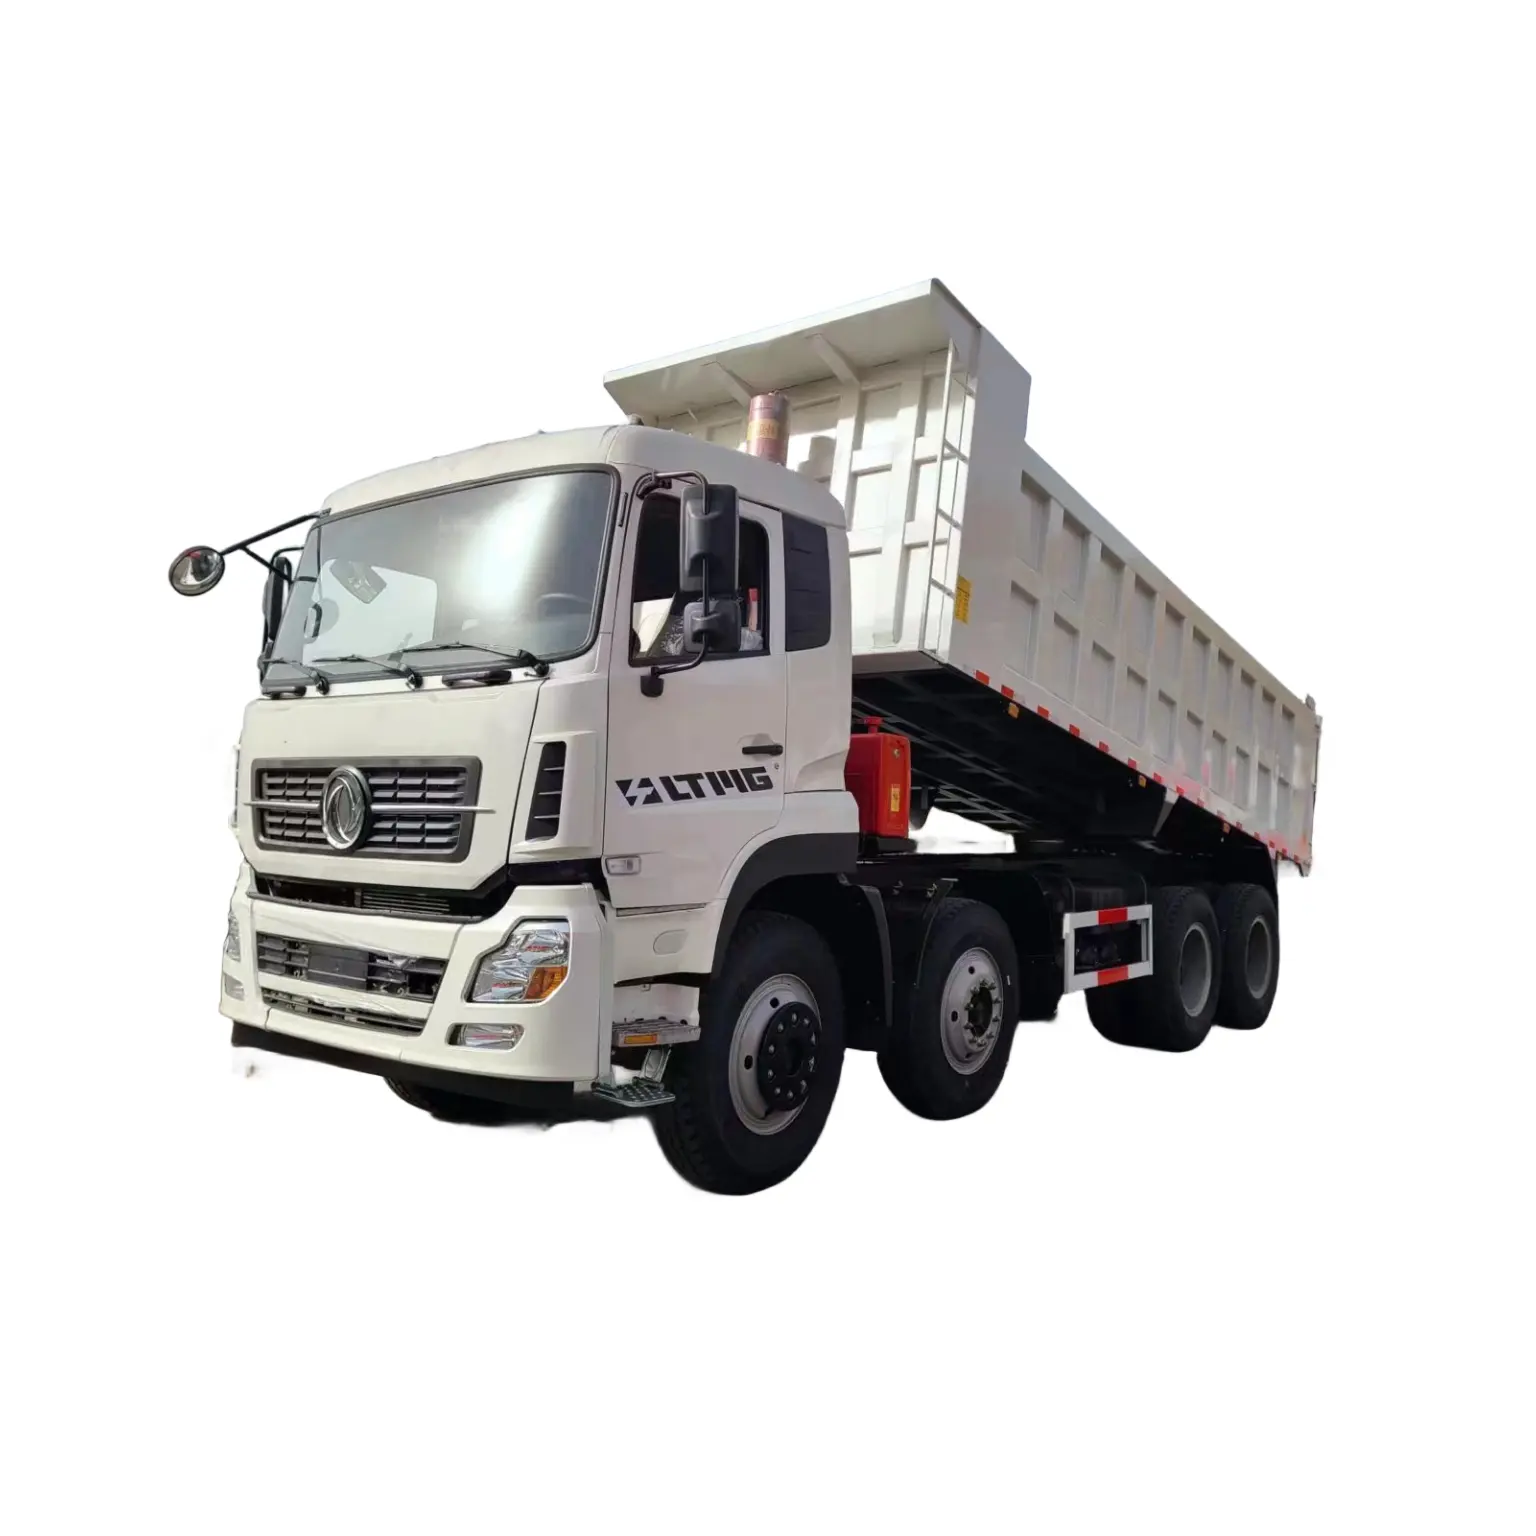 8x4 덤프 트럭 엔지니어링 덤프 트럭 팁 트럭